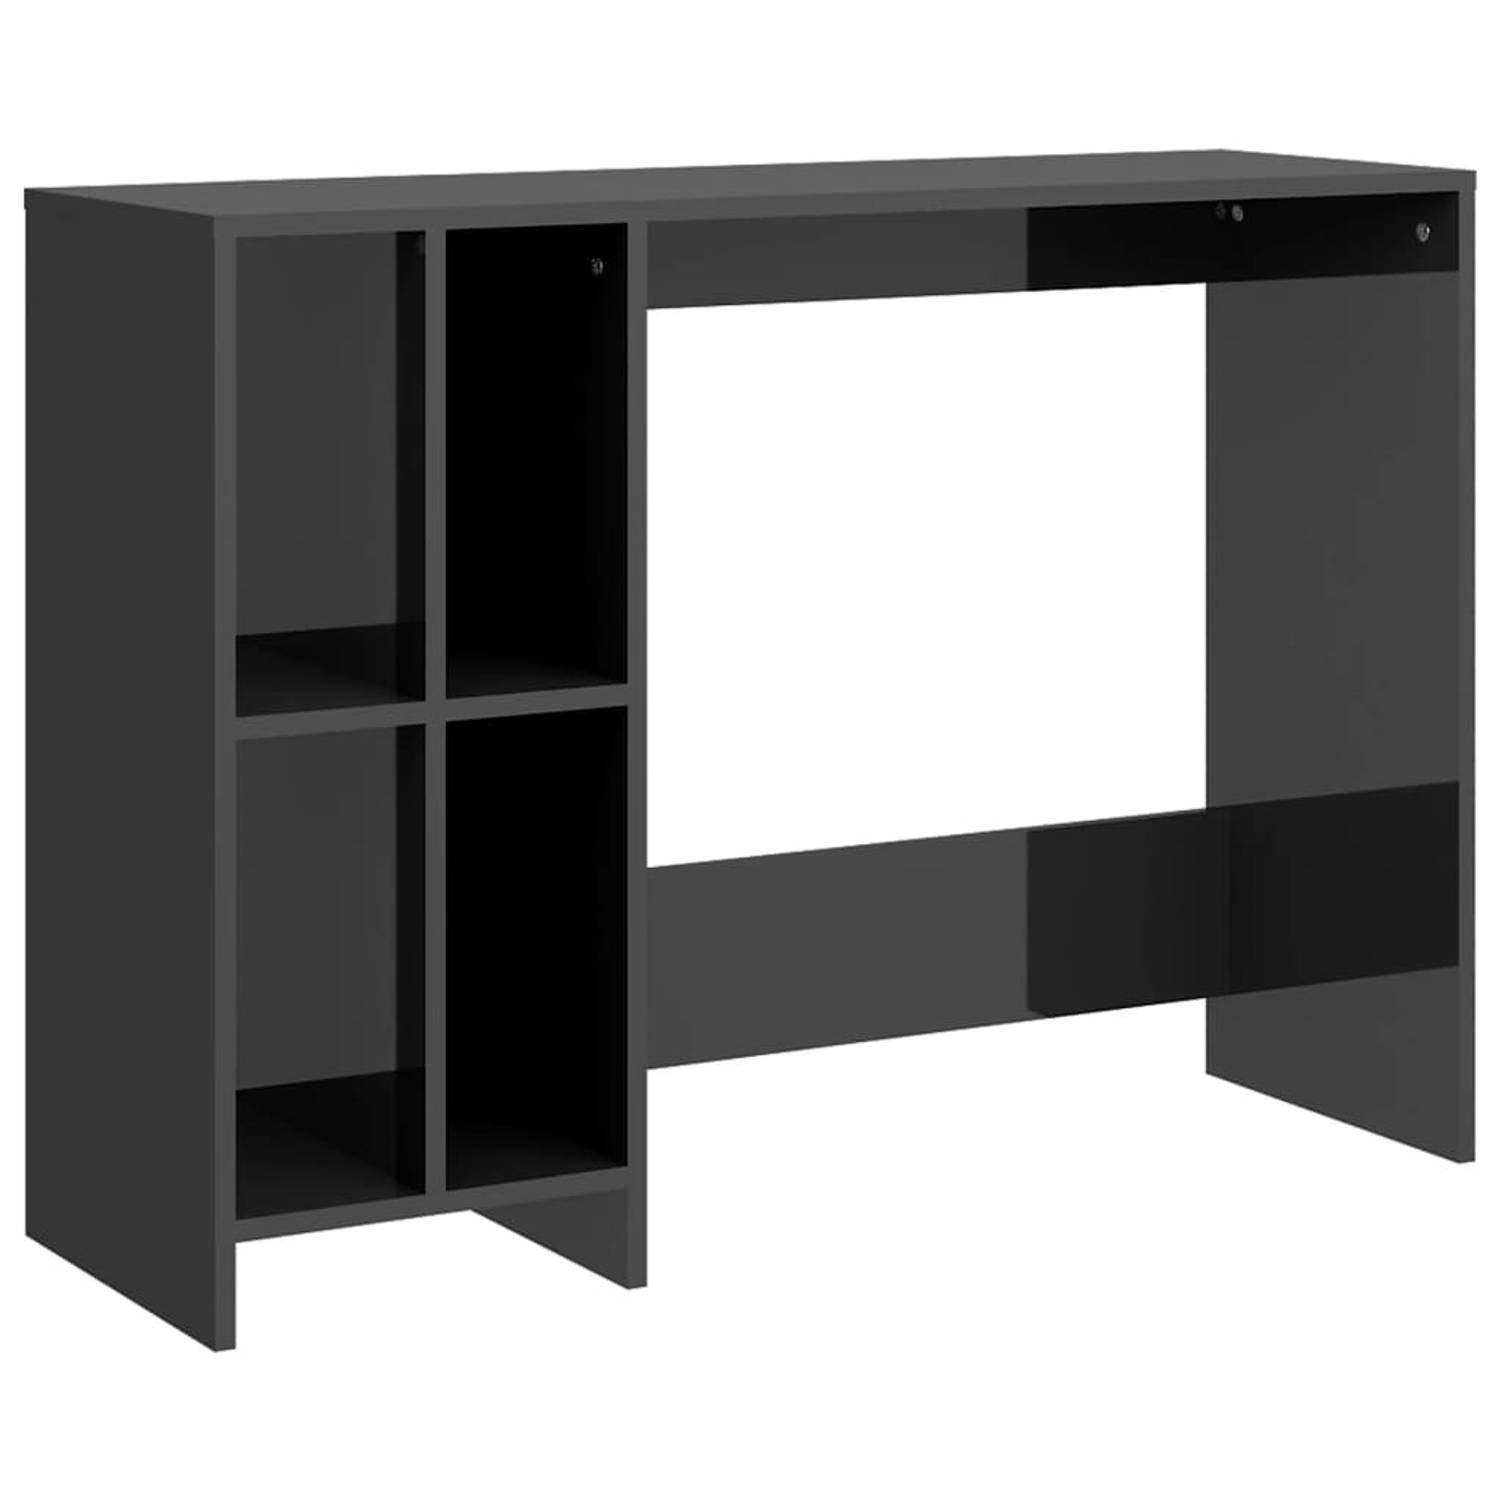 The Living Store Bureau - Hoogglans grijs - 102.5 x 35 x 75 cm - Met schappen - Montage vereist